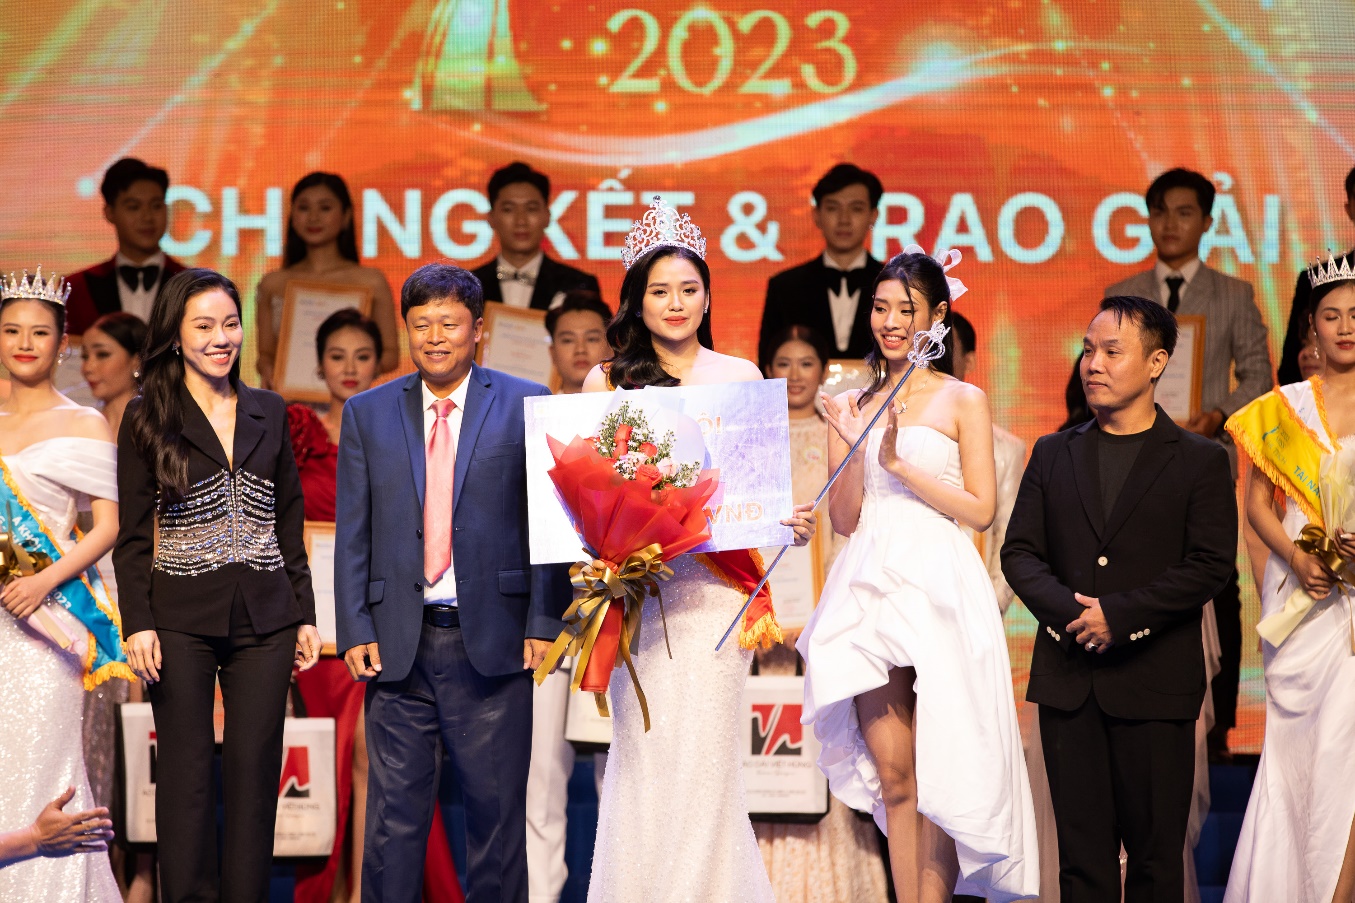 Hoa khôi Miss HUTECH 2023 Nguyễn Thị Tuyết Nhung dự định tham gia các cuộc thi sắc đẹp lớn hơn trong năm nay - Ảnh 4.